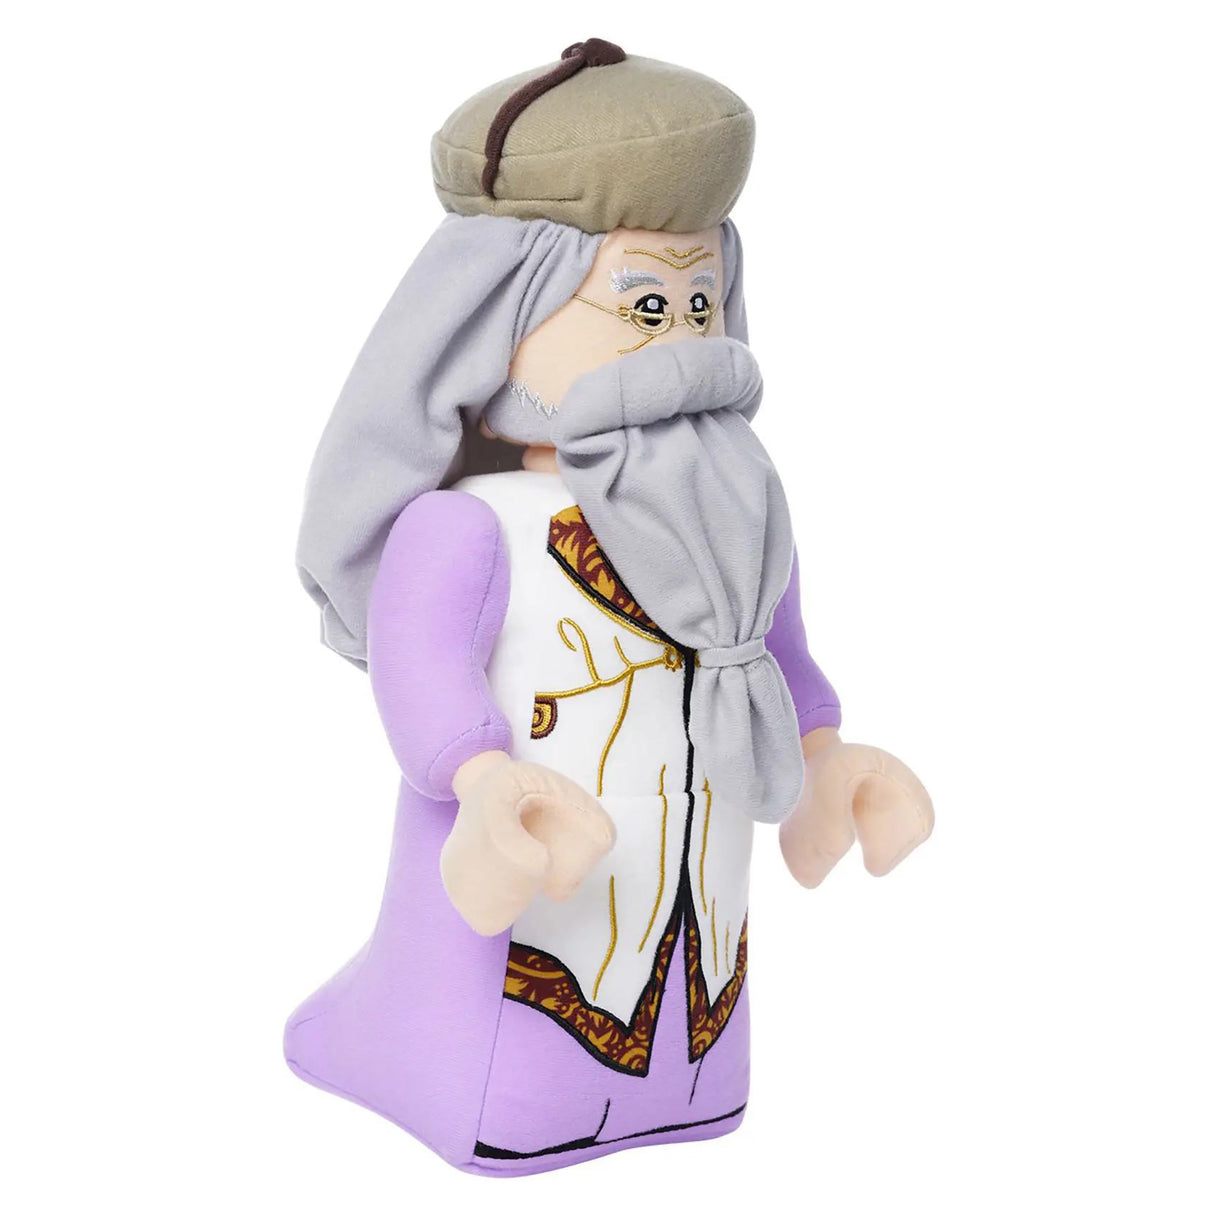 LEGO Plush Albus Dumbledore